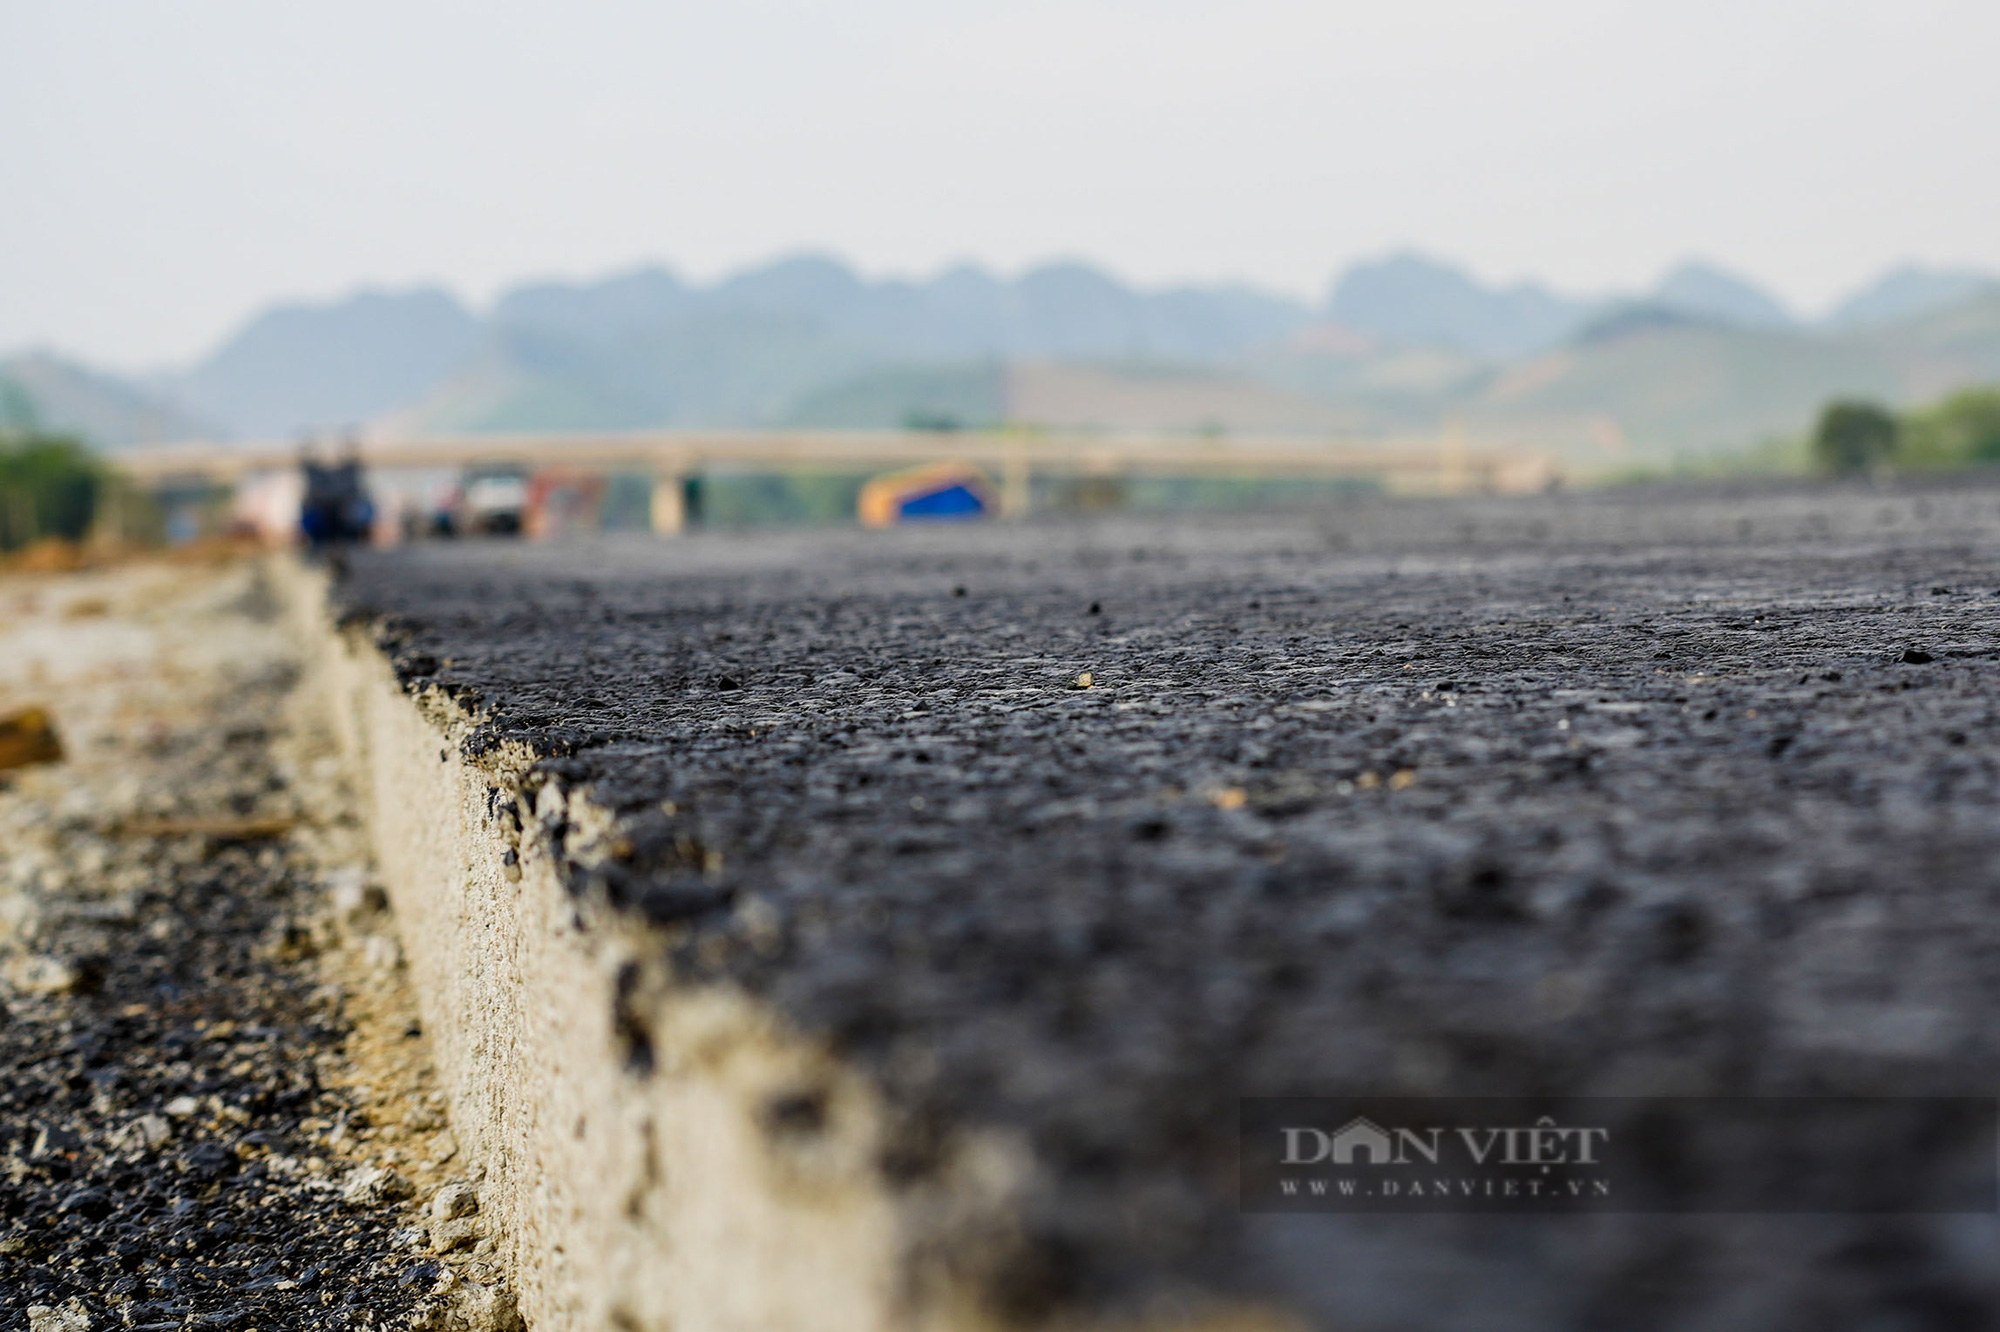 Hơn 200 m thảm nhựa đường đầu tiên tại cao tốc Bắc Nam đoạn Ninh Bình - Thanh Hoá - Ảnh 5.